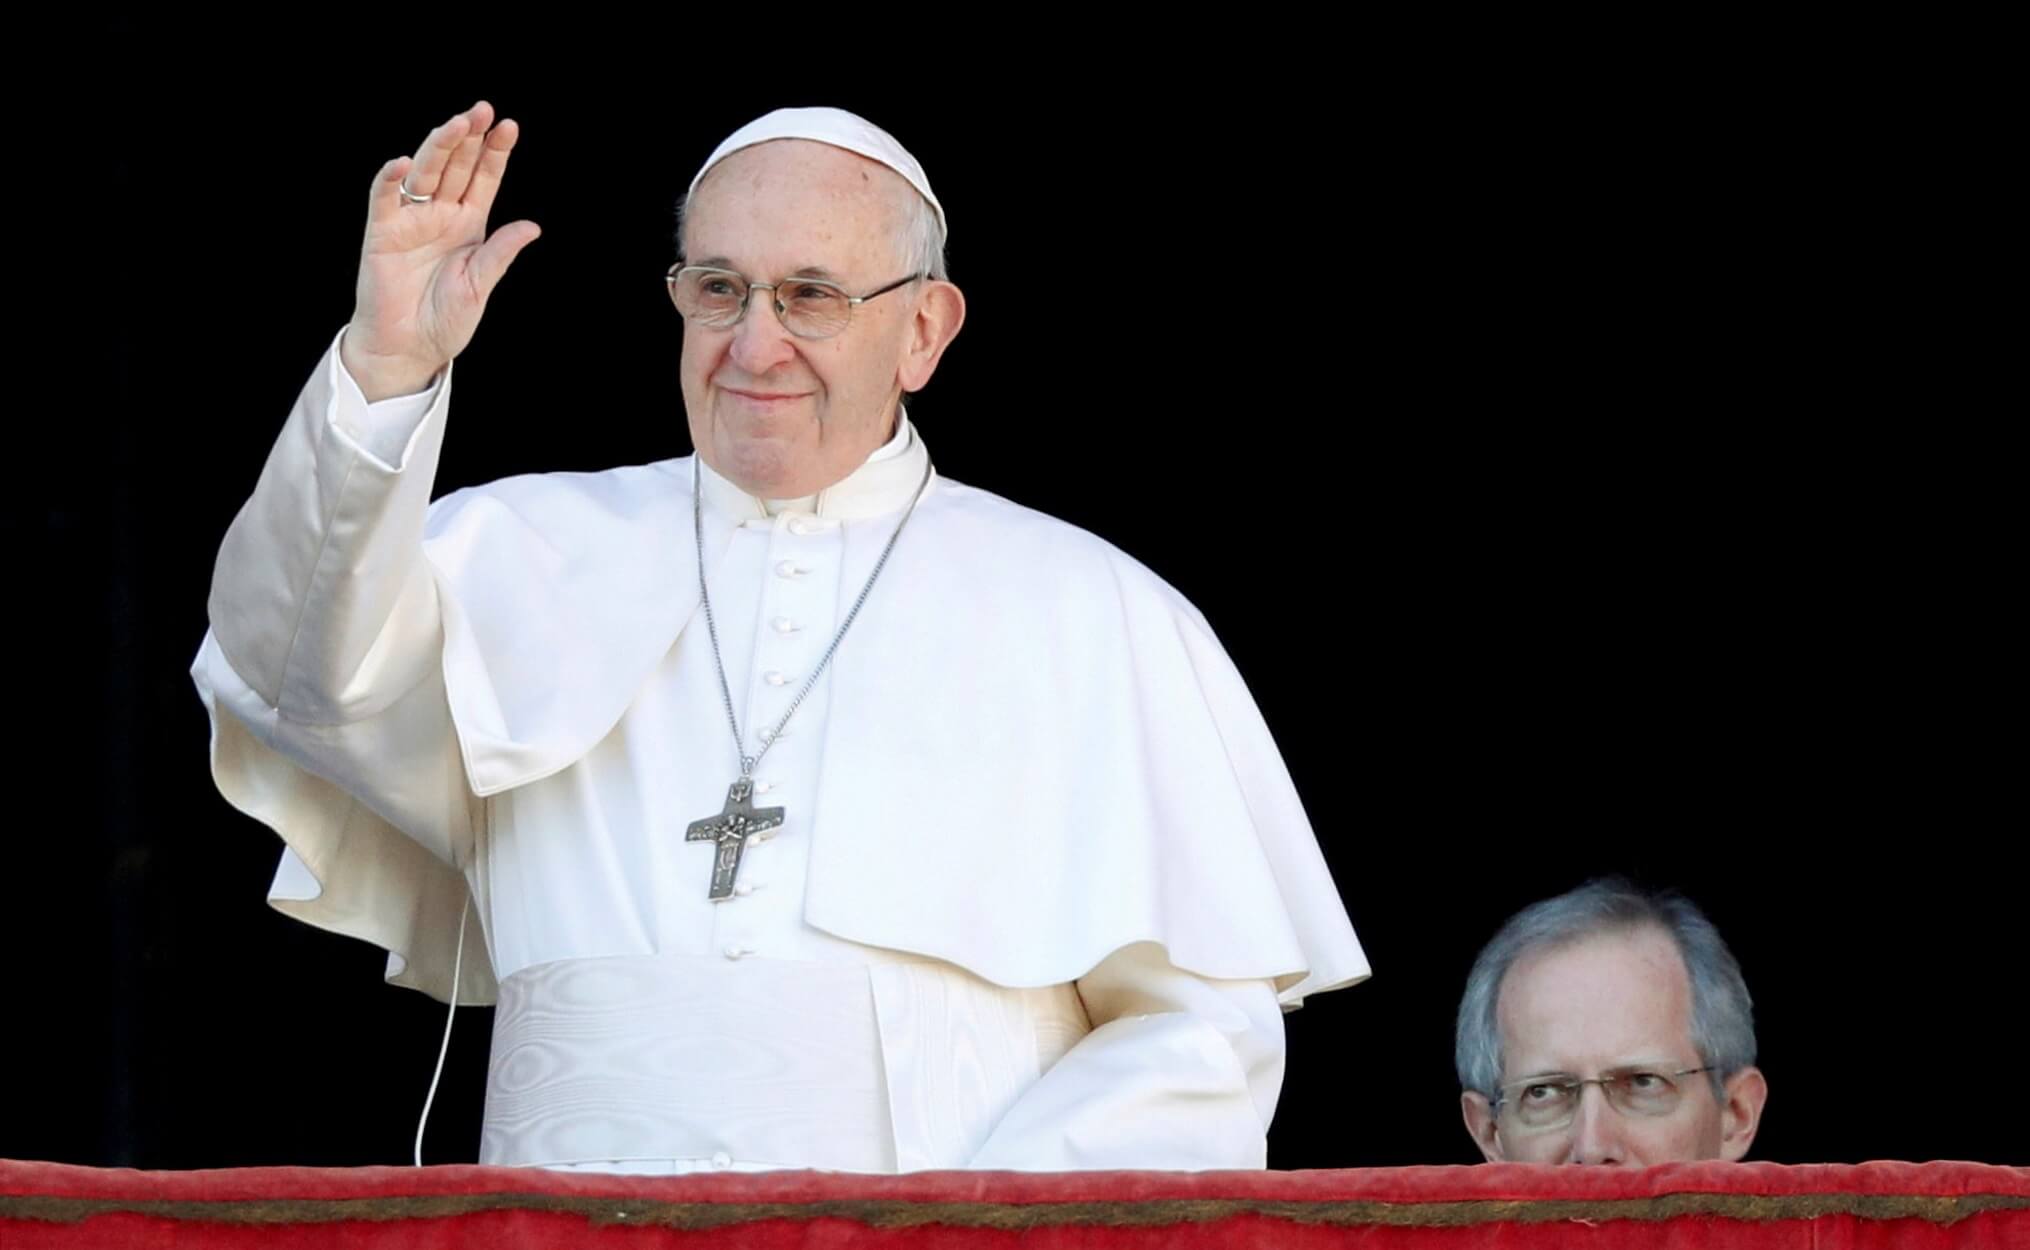 Ο Πάπας Φραγκίσκος στέλνει παγκόσμιο μήνυμα με μία καρφίτσα!